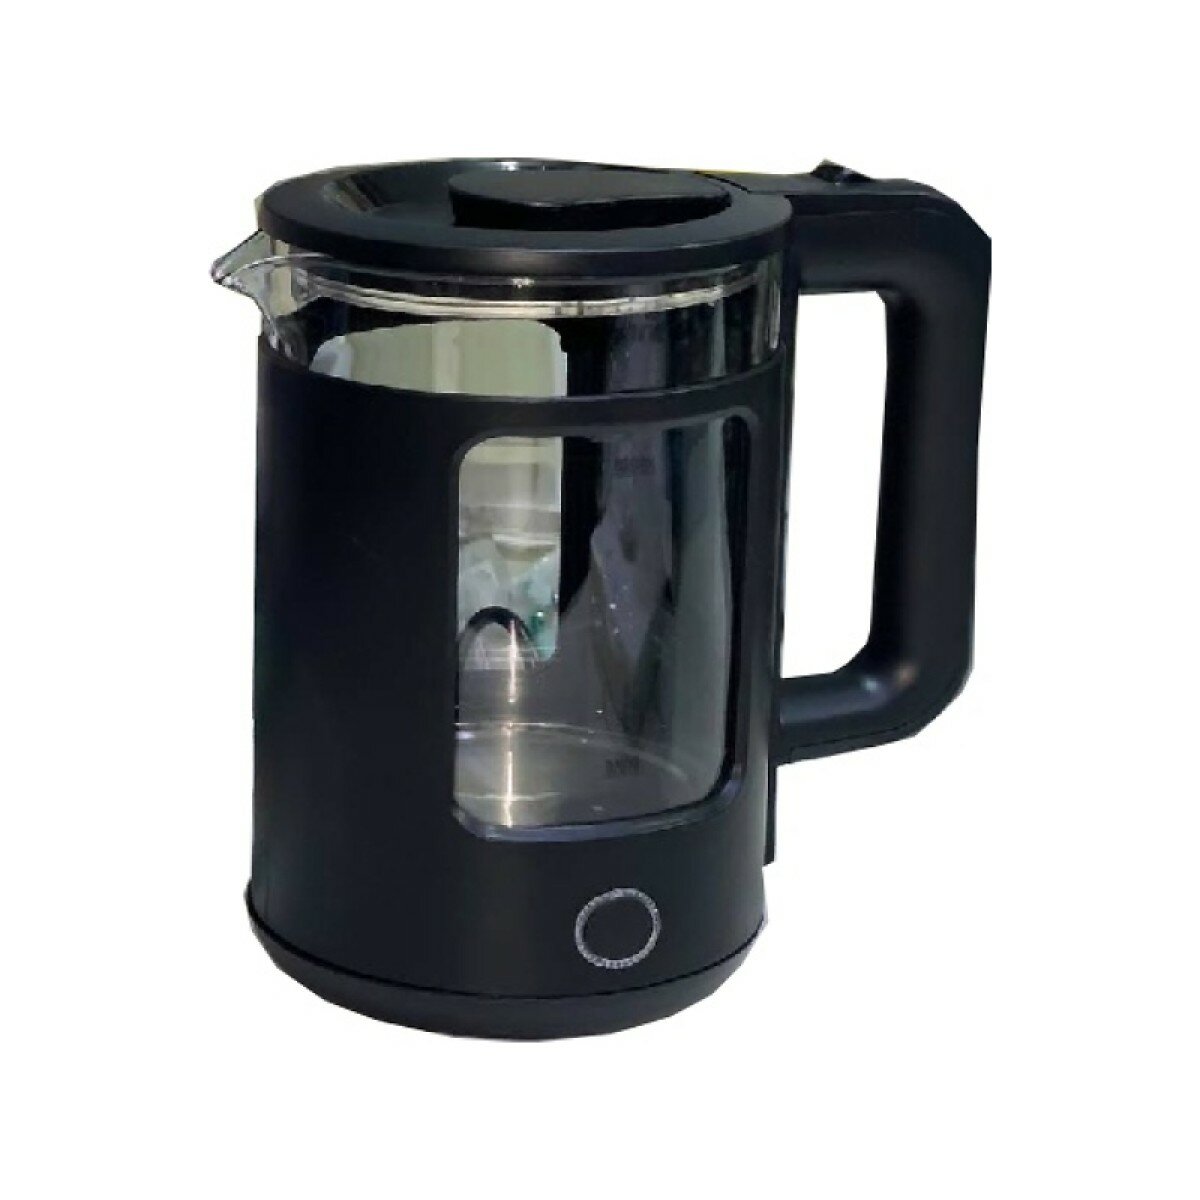 Чайник электрический "ORM-8022" от бренда "Orvica", 2 литра, 1850 вт, индикатор уровня воды, цвет черный